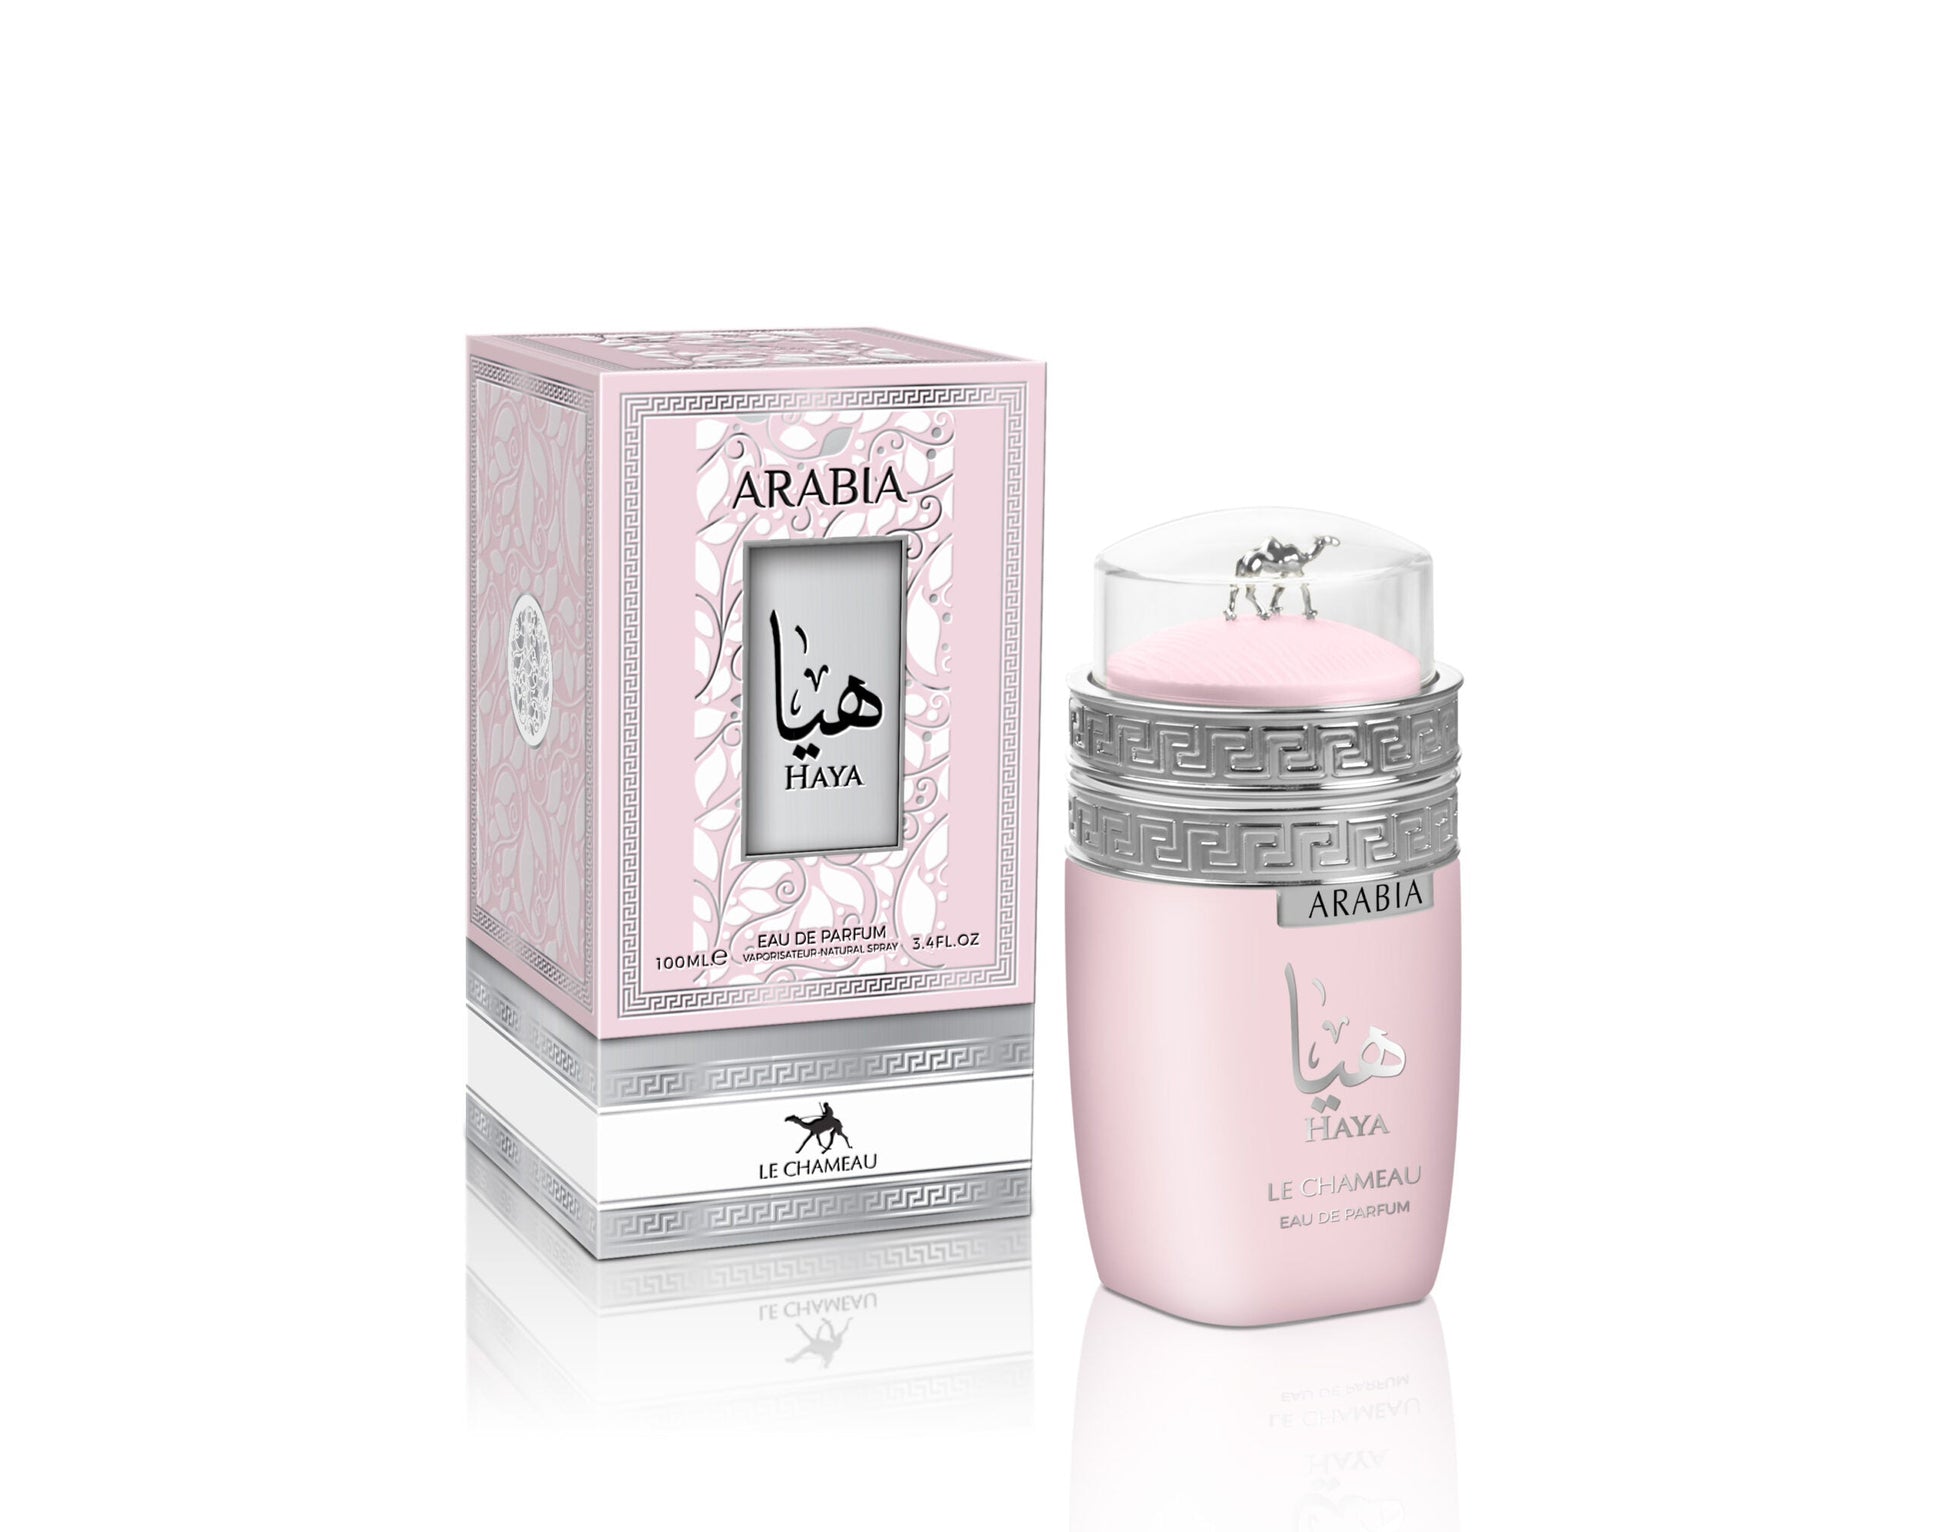 Arabia Haya By Le Chameau Eau de Parfum 3.4 Oz. Unisex